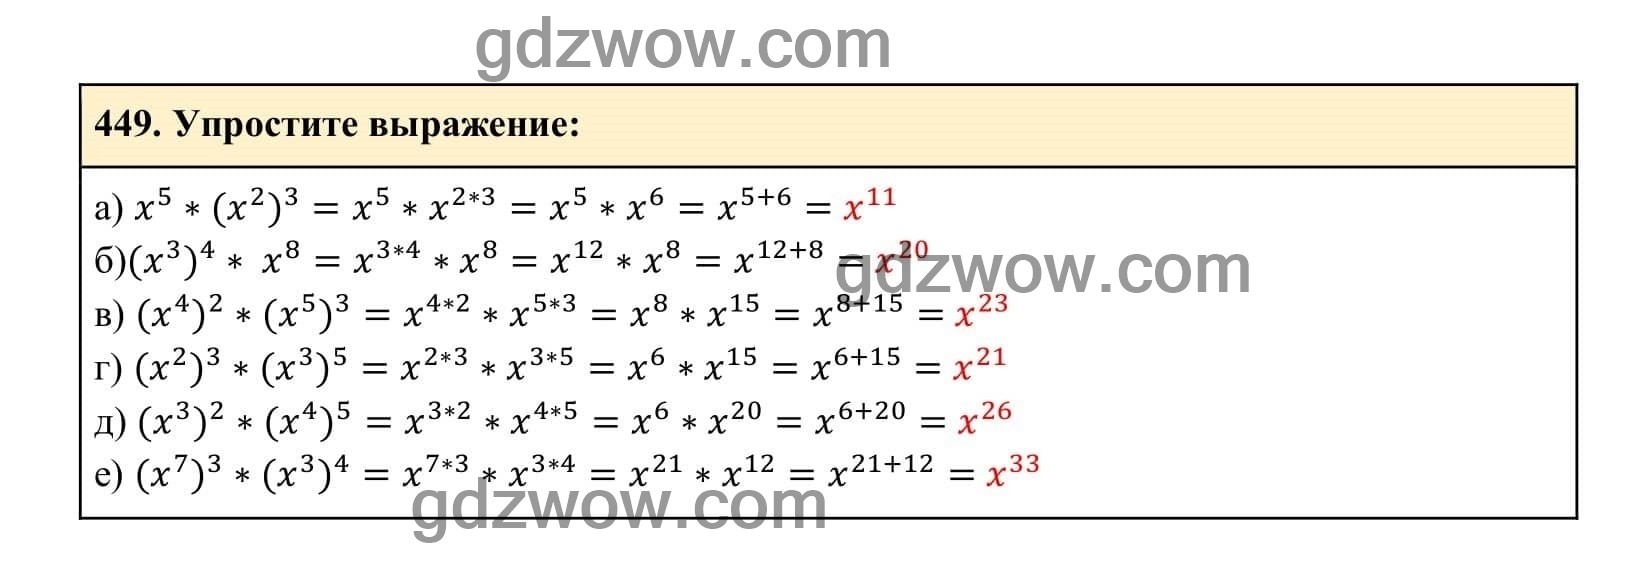 Упражнение 449 - ГДЗ по Алгебре 7 класс Учебник Макарычев (решебник) - GDZwow